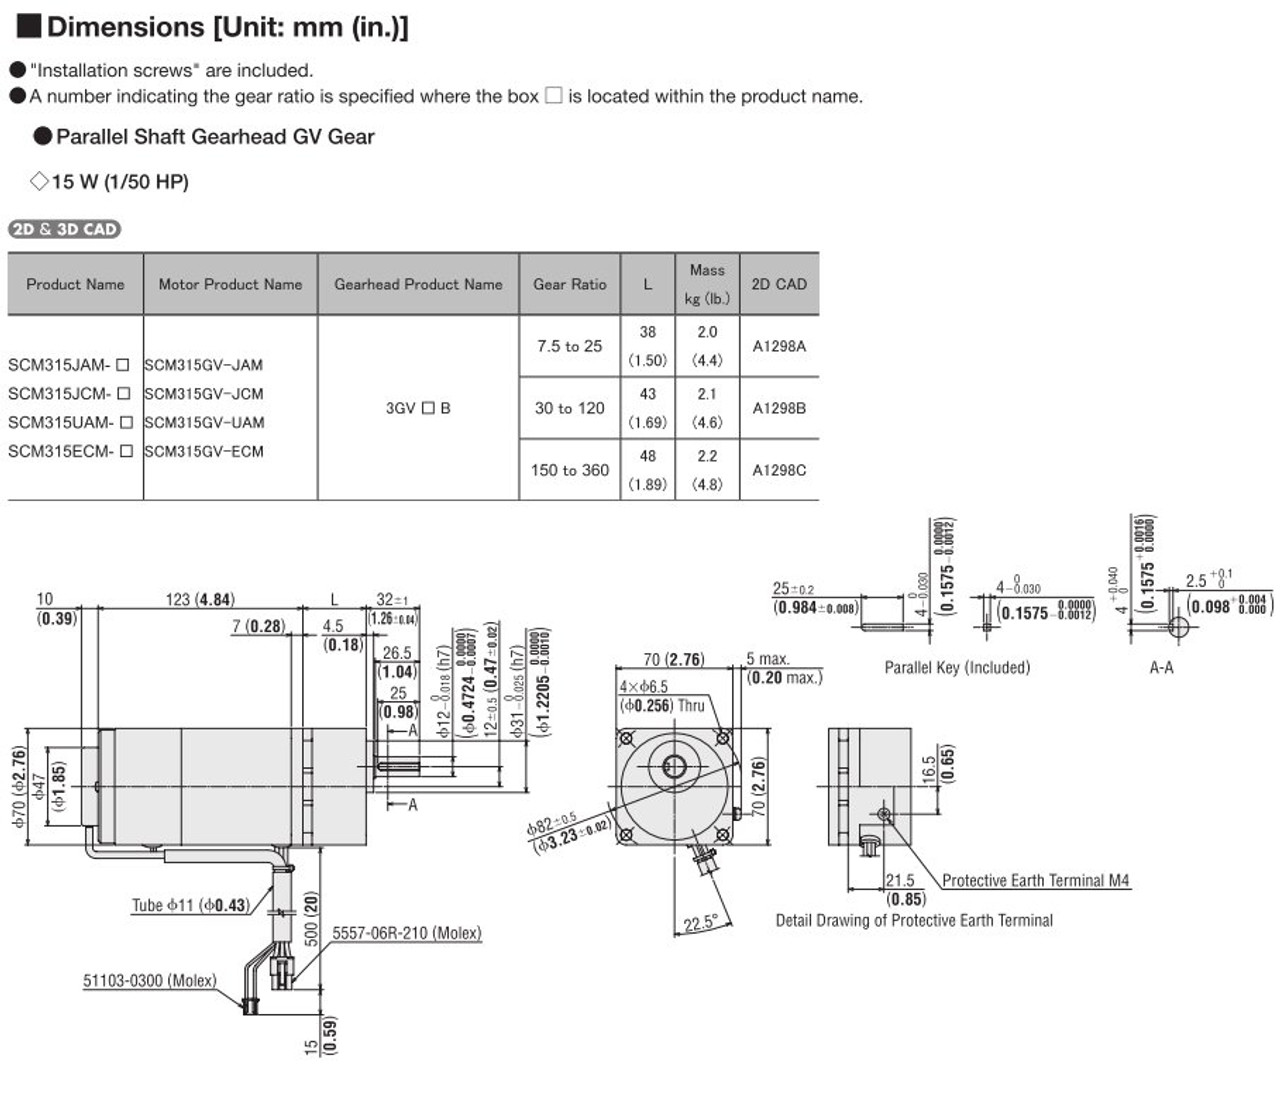 SCM315ECM-36 - Dimensions